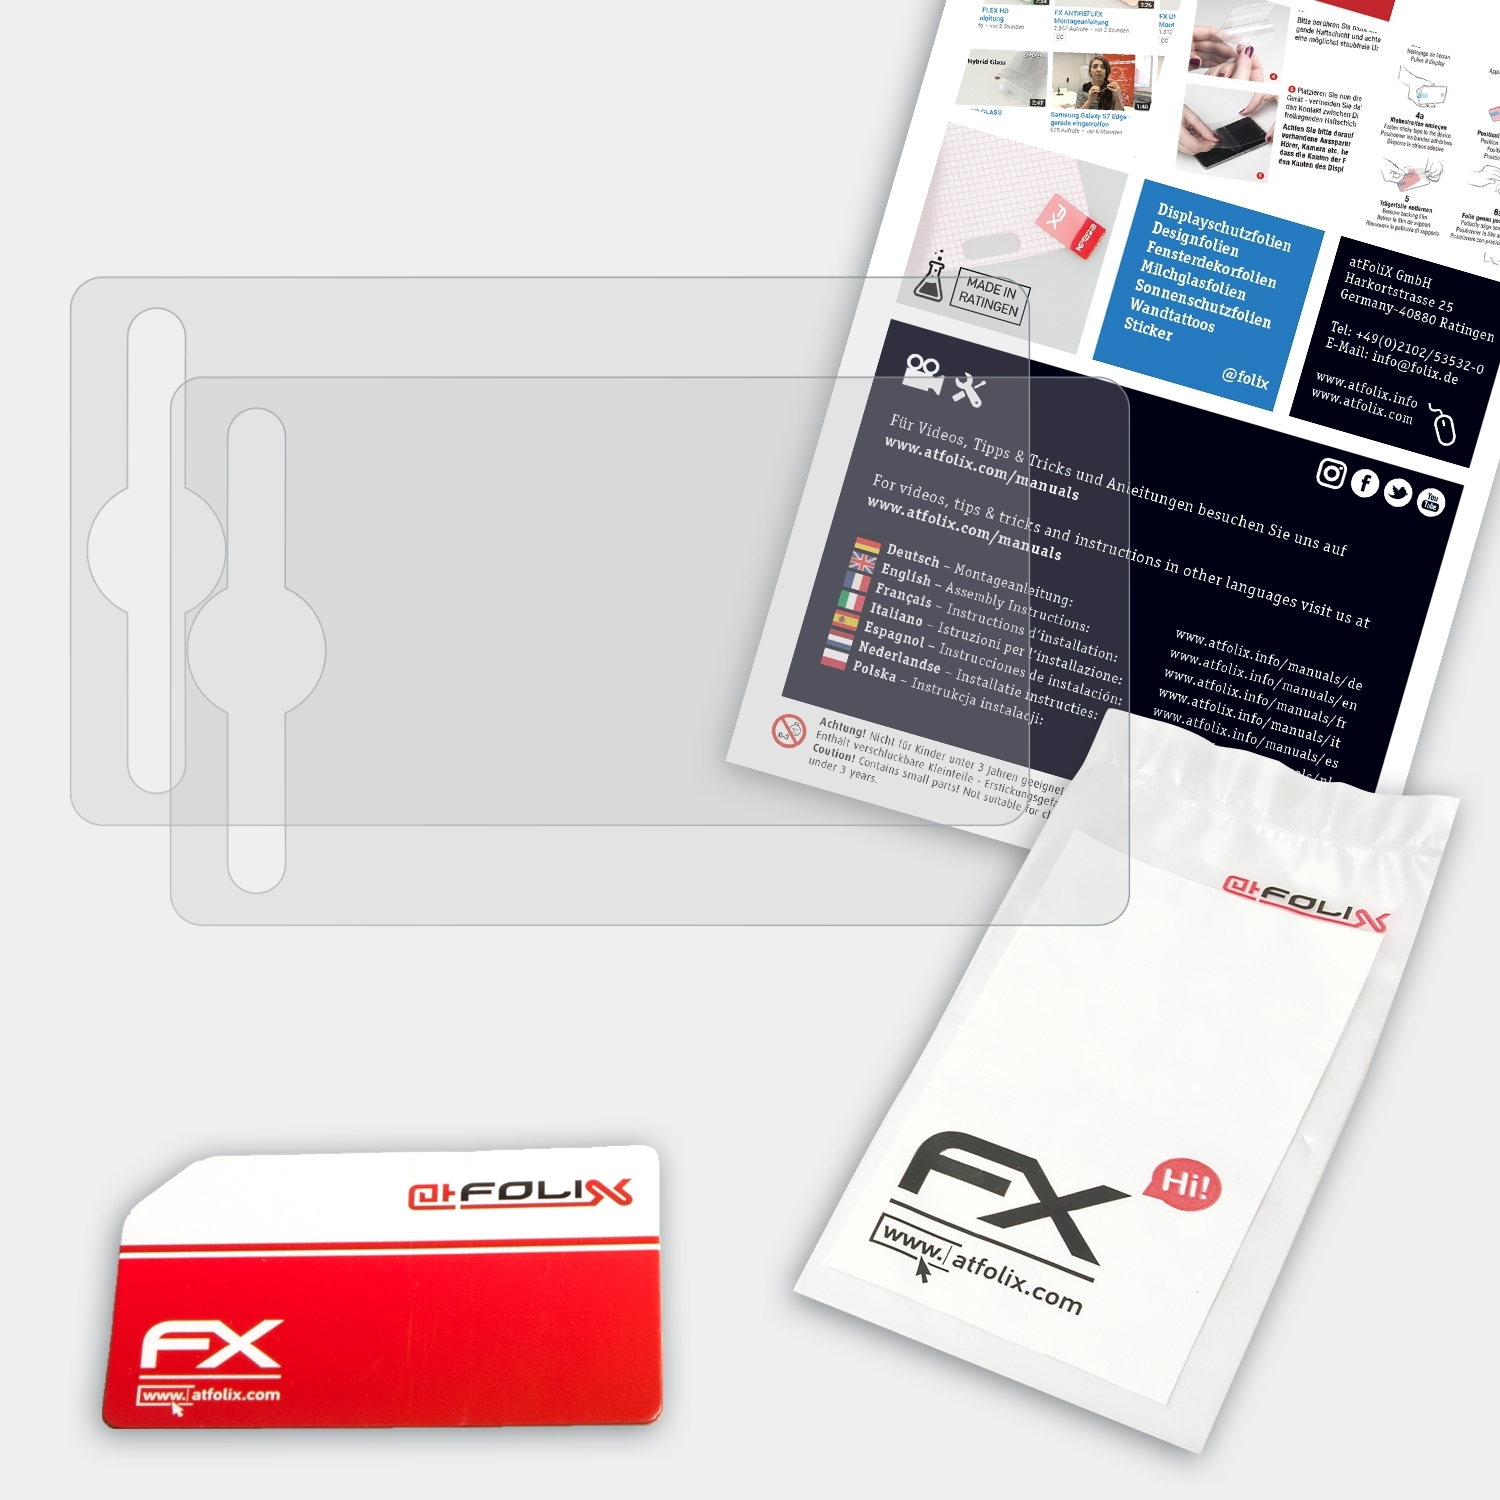 ATFOLIX 2x FX-Antireflex Deco Displayschutz(für 02) XP-PEN